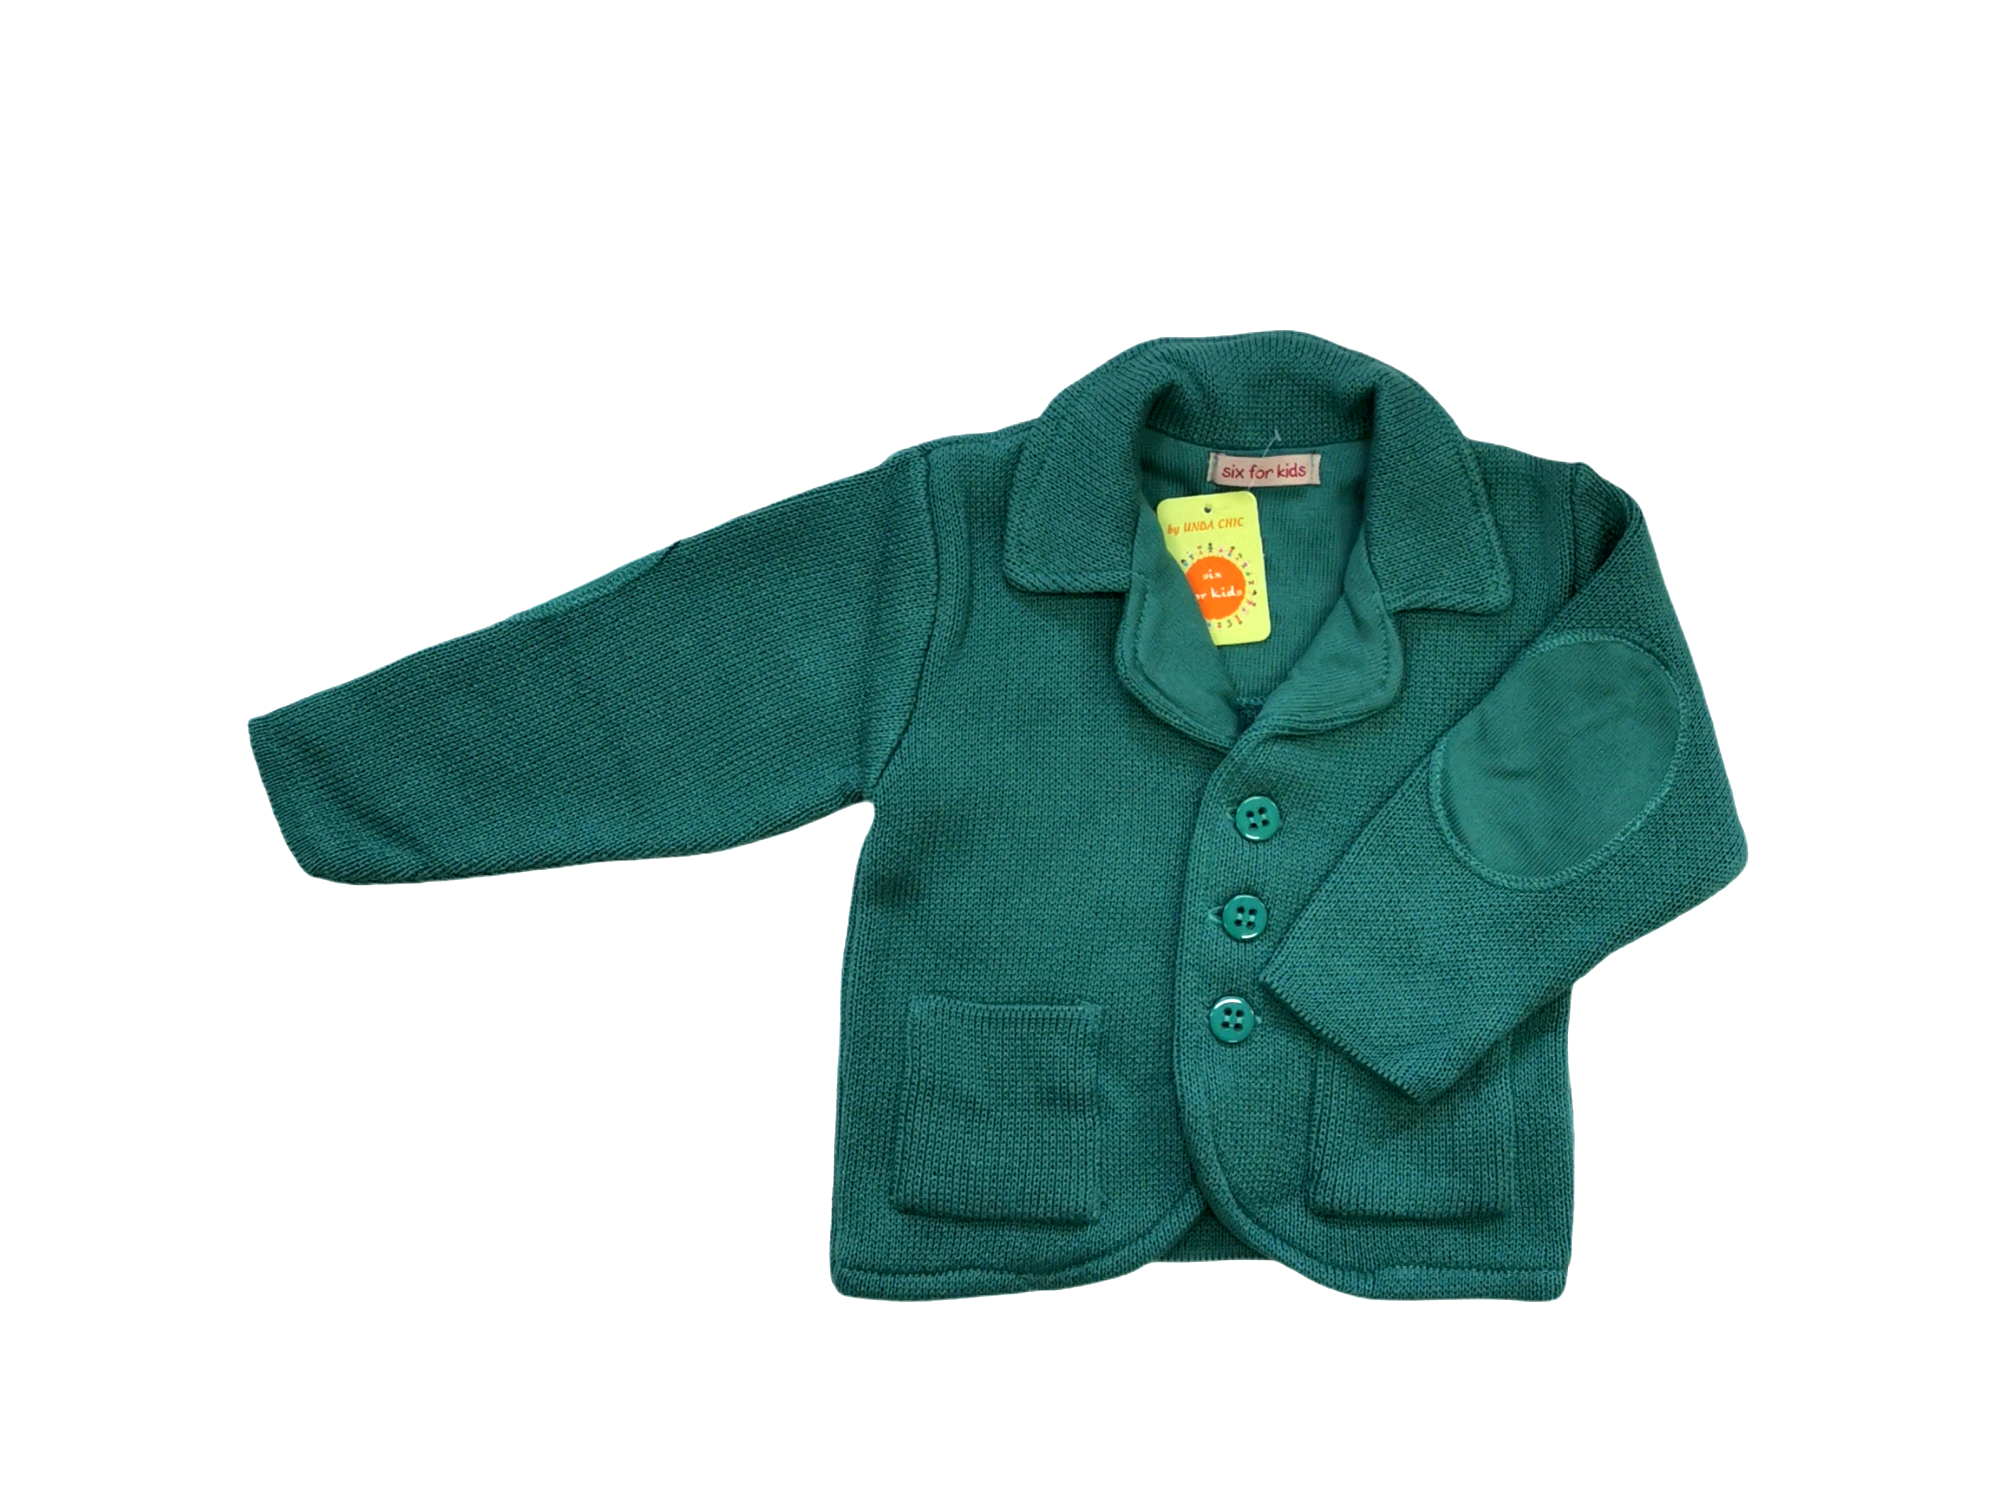 Marquee Hesitate grain Sacou Edi verde smarald | SixForKids - Magazin de imbracaminte pentru copii